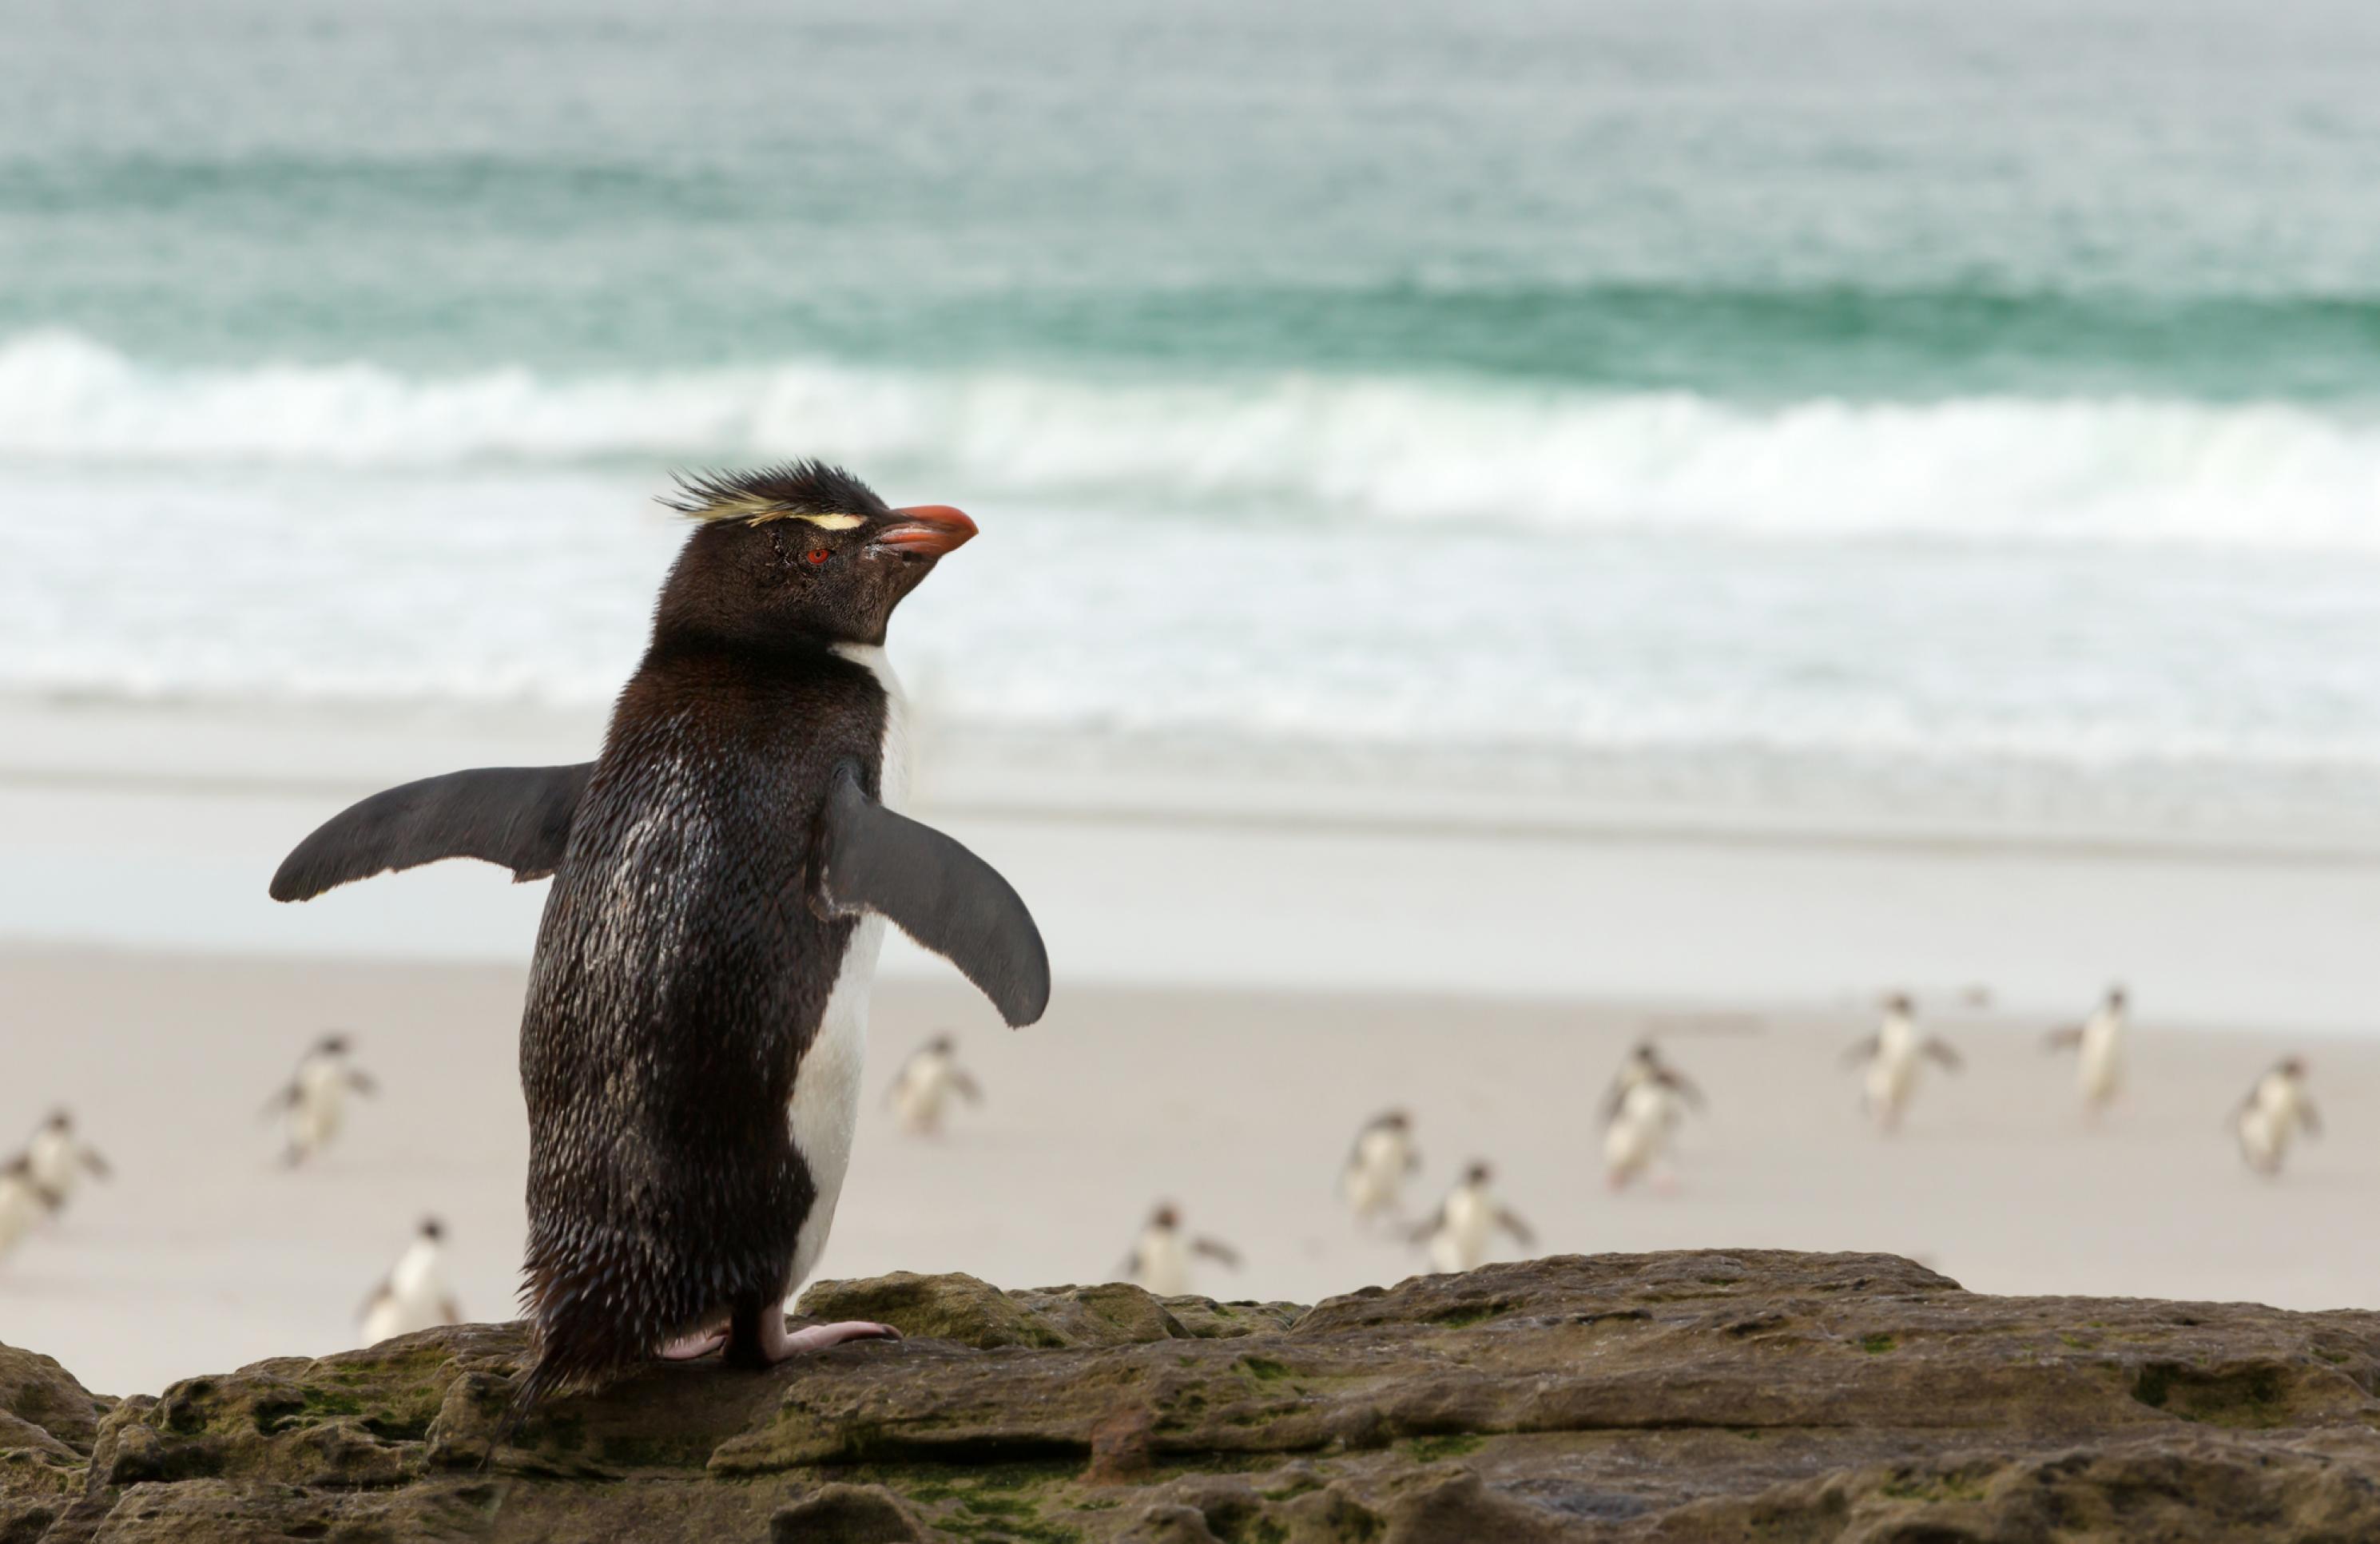 Pinguin auf Felsen, im Hintergrund laufen Artgenossen ins Meer.